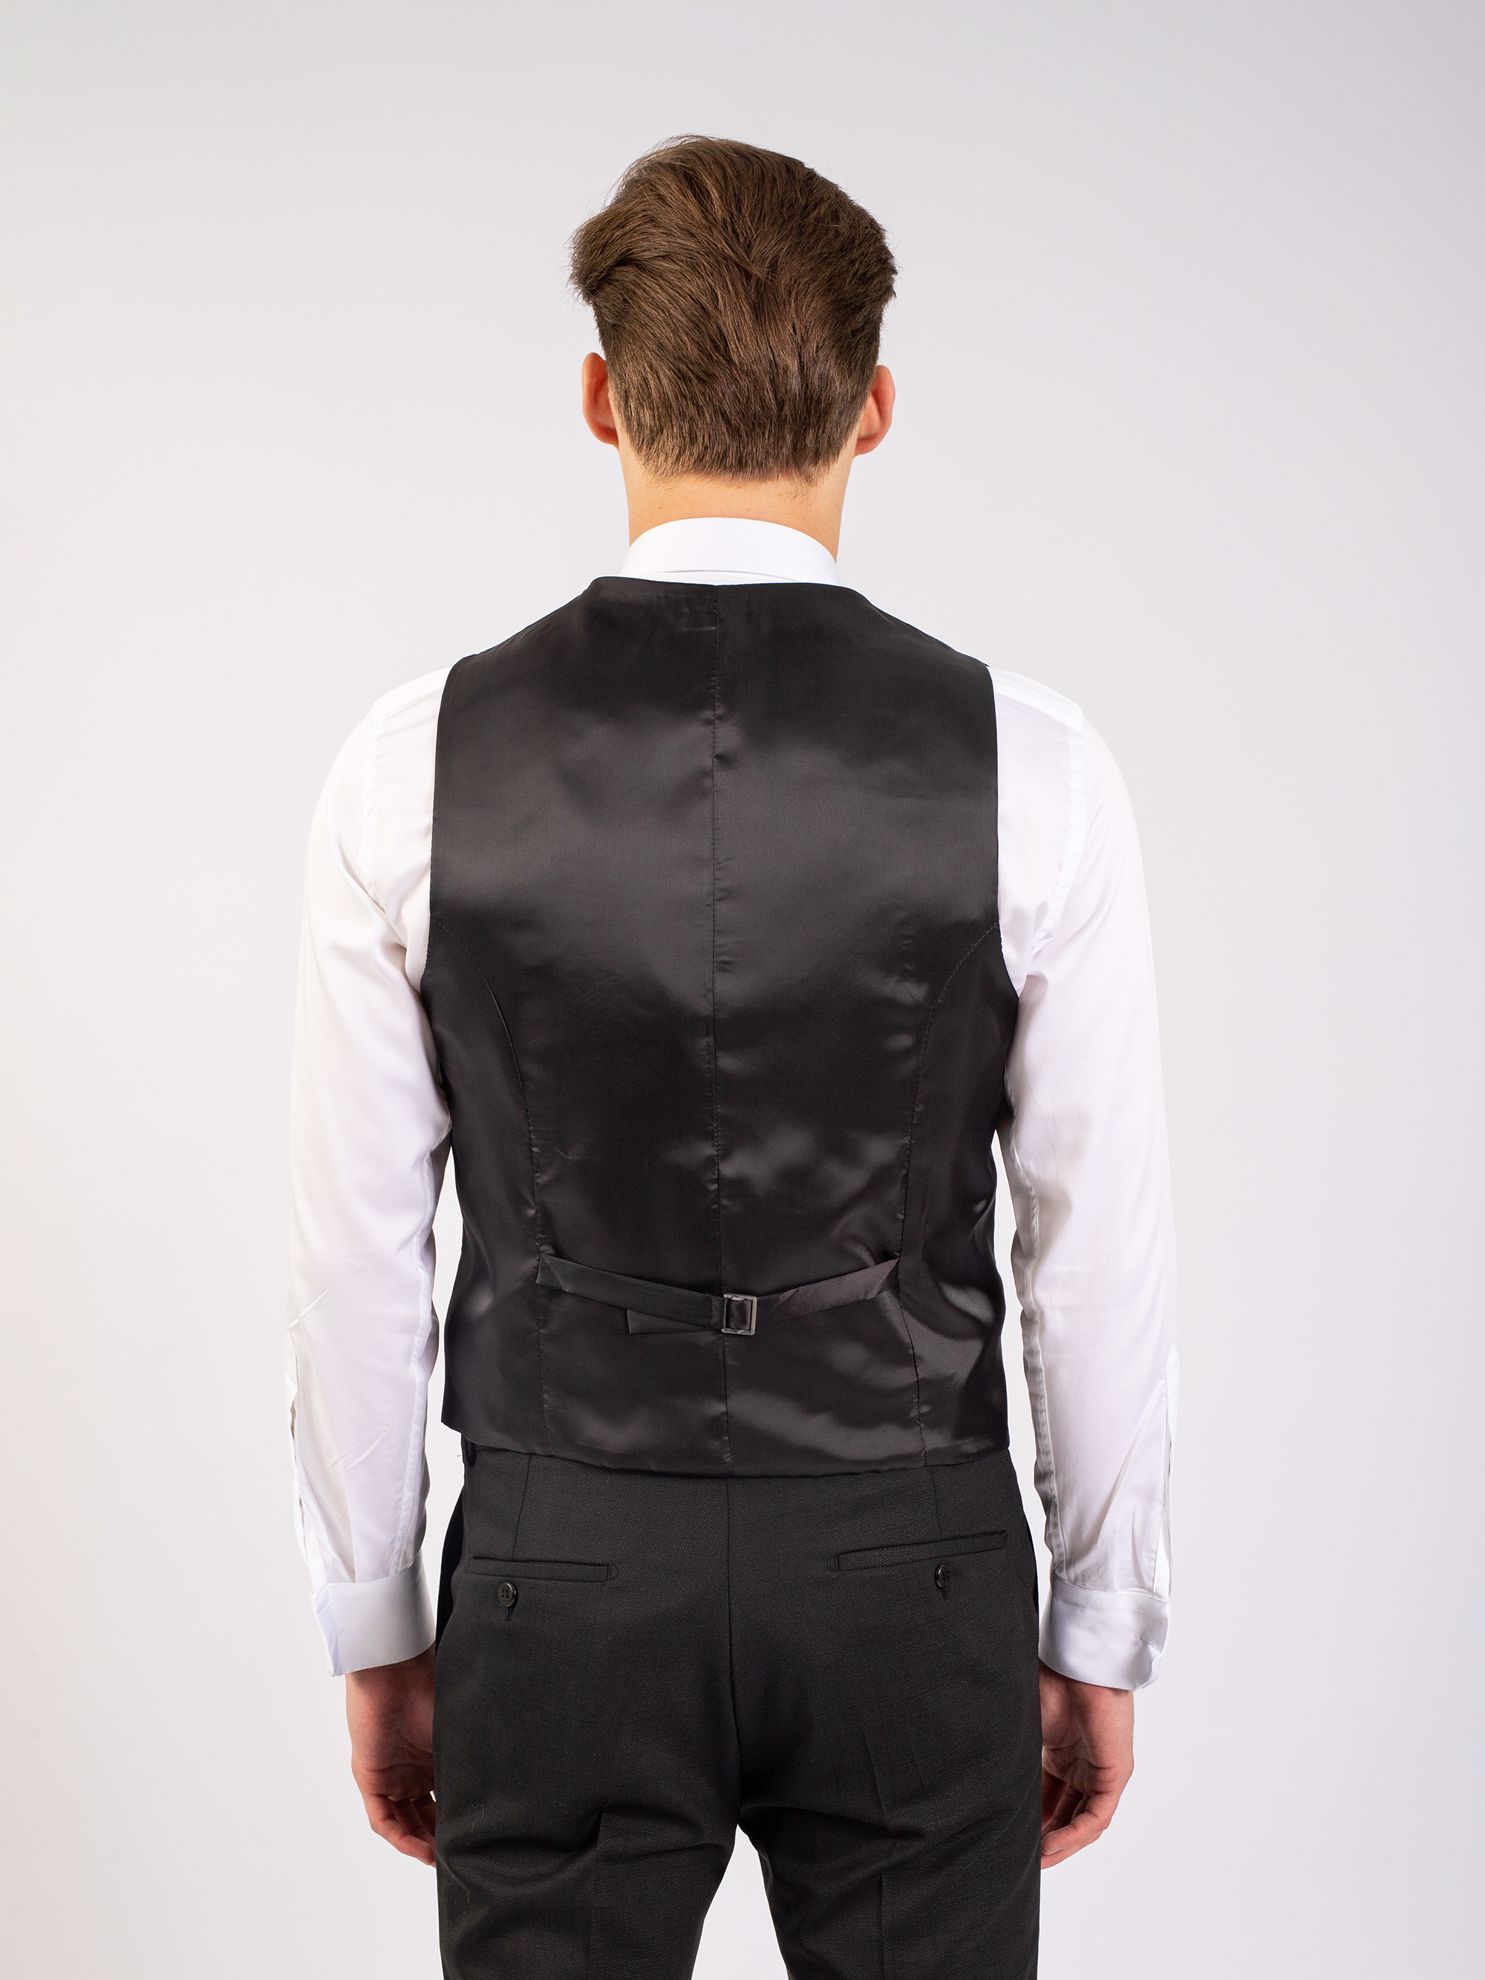 Toss Erkek 6 Drop Takım Elbise-Siyah. ürün görseli